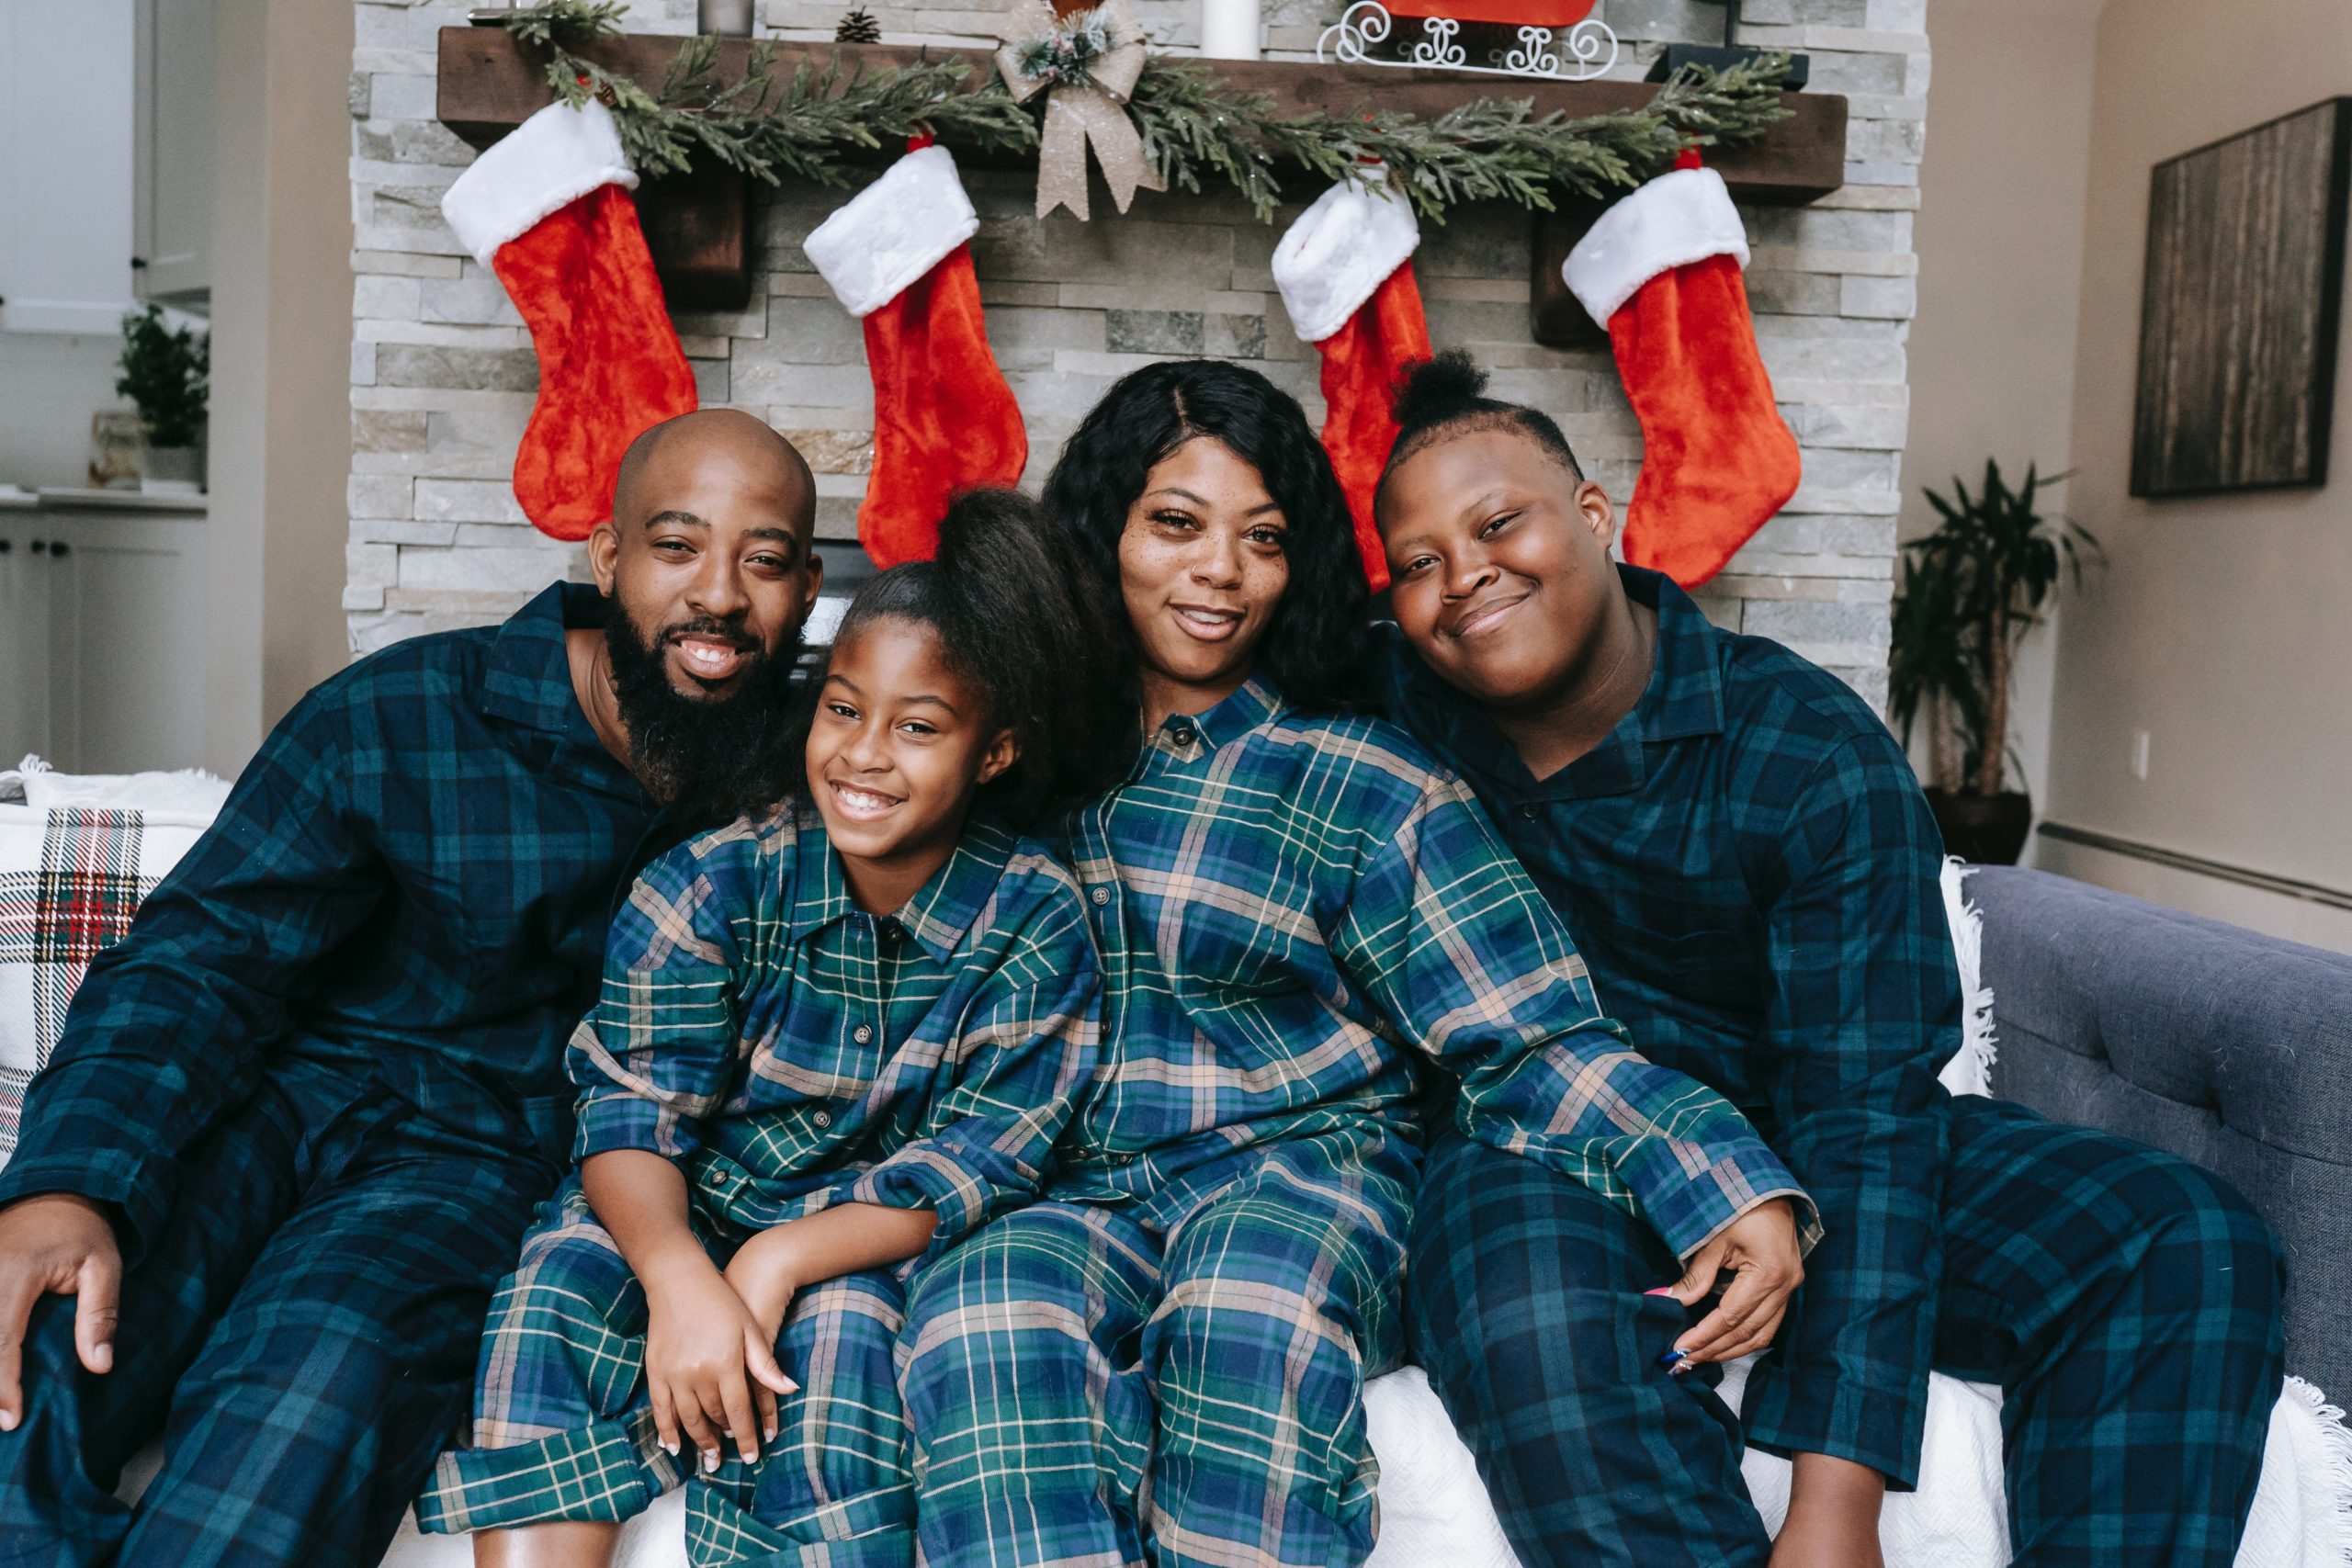 Smiling family sitting together, wearing matching pajamas